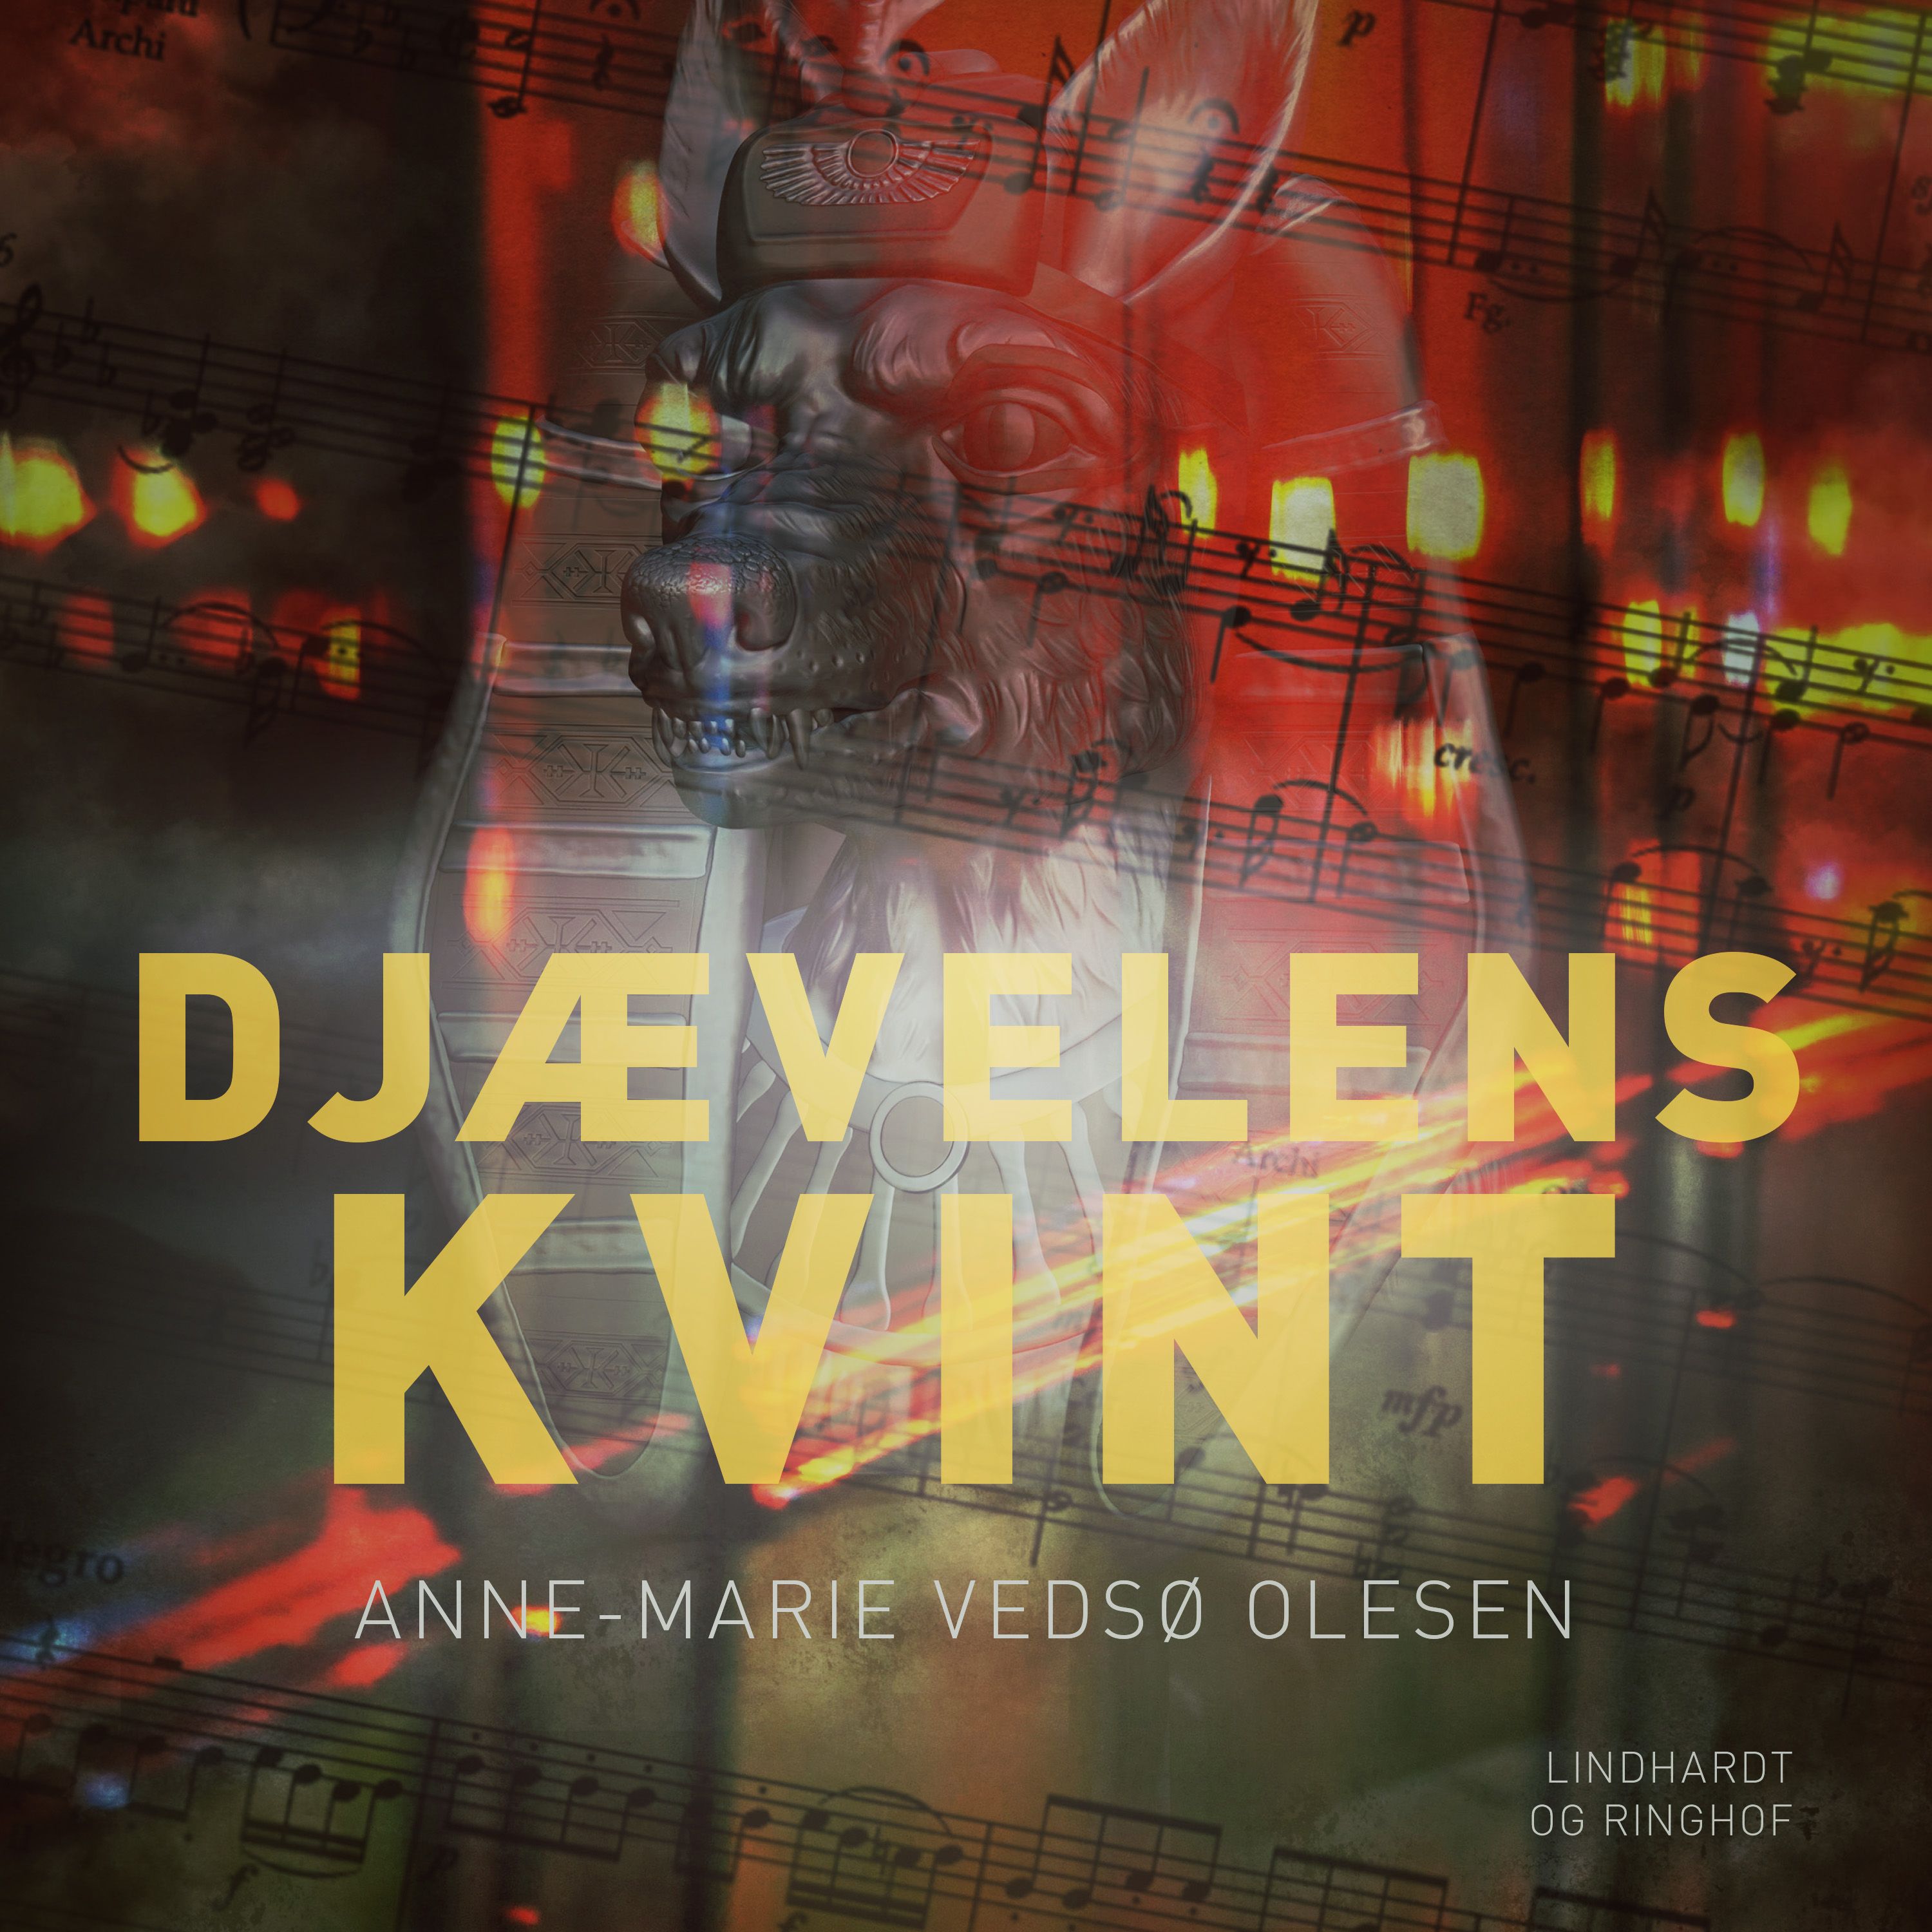 Djævelens kvint, audiobook by Anne-Marie Vedsø Olesen